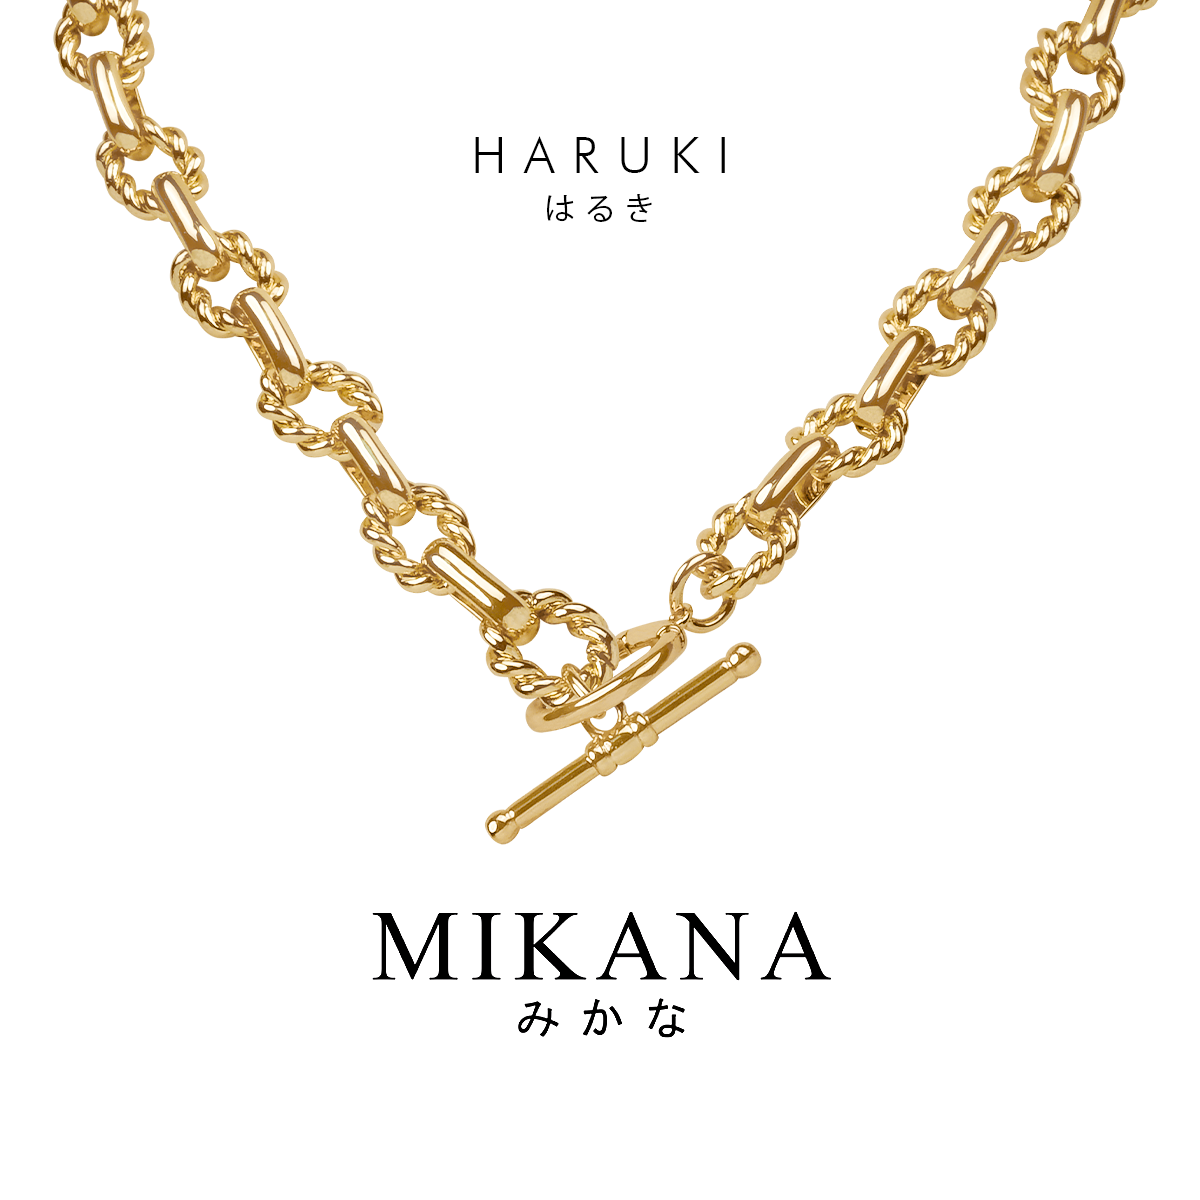 Chainholics Haruki Link Chain Necklace